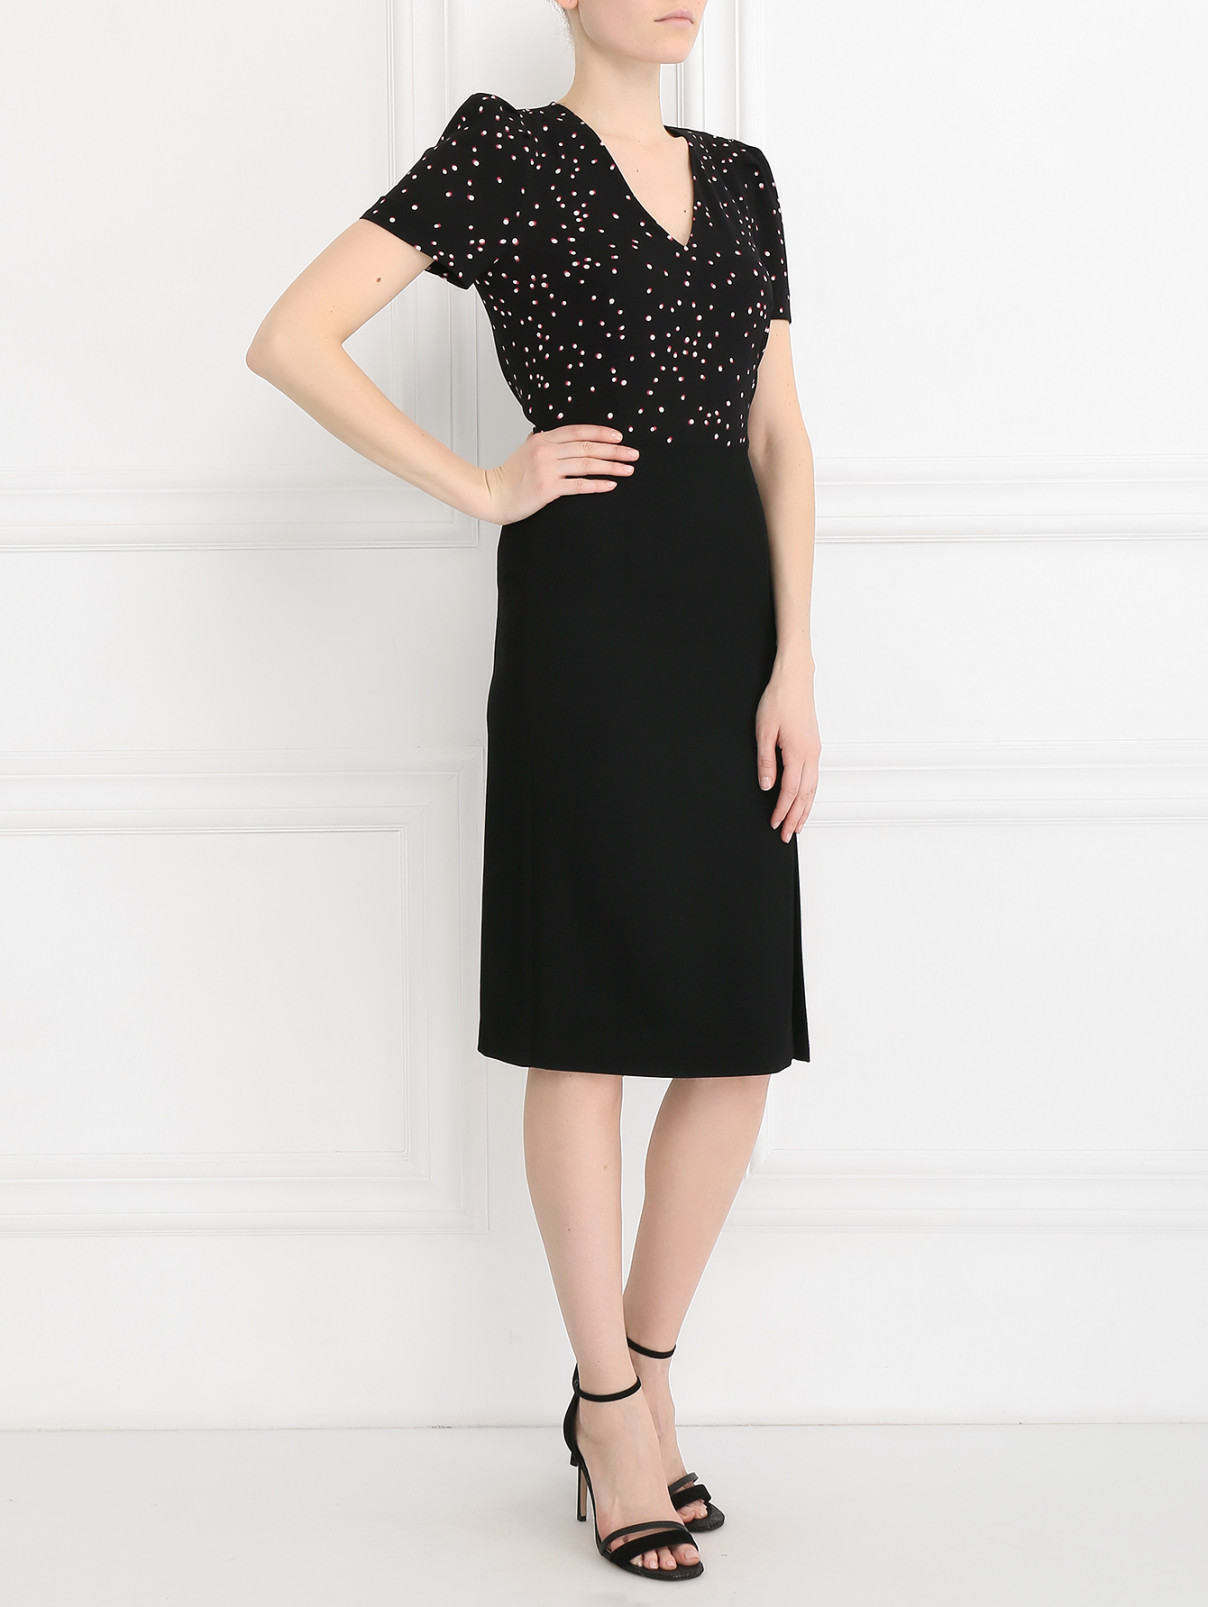 Платье-футляр из шерсти с узором "горох" Paul Smith  –  Модель Общий вид  – Цвет:  Черный